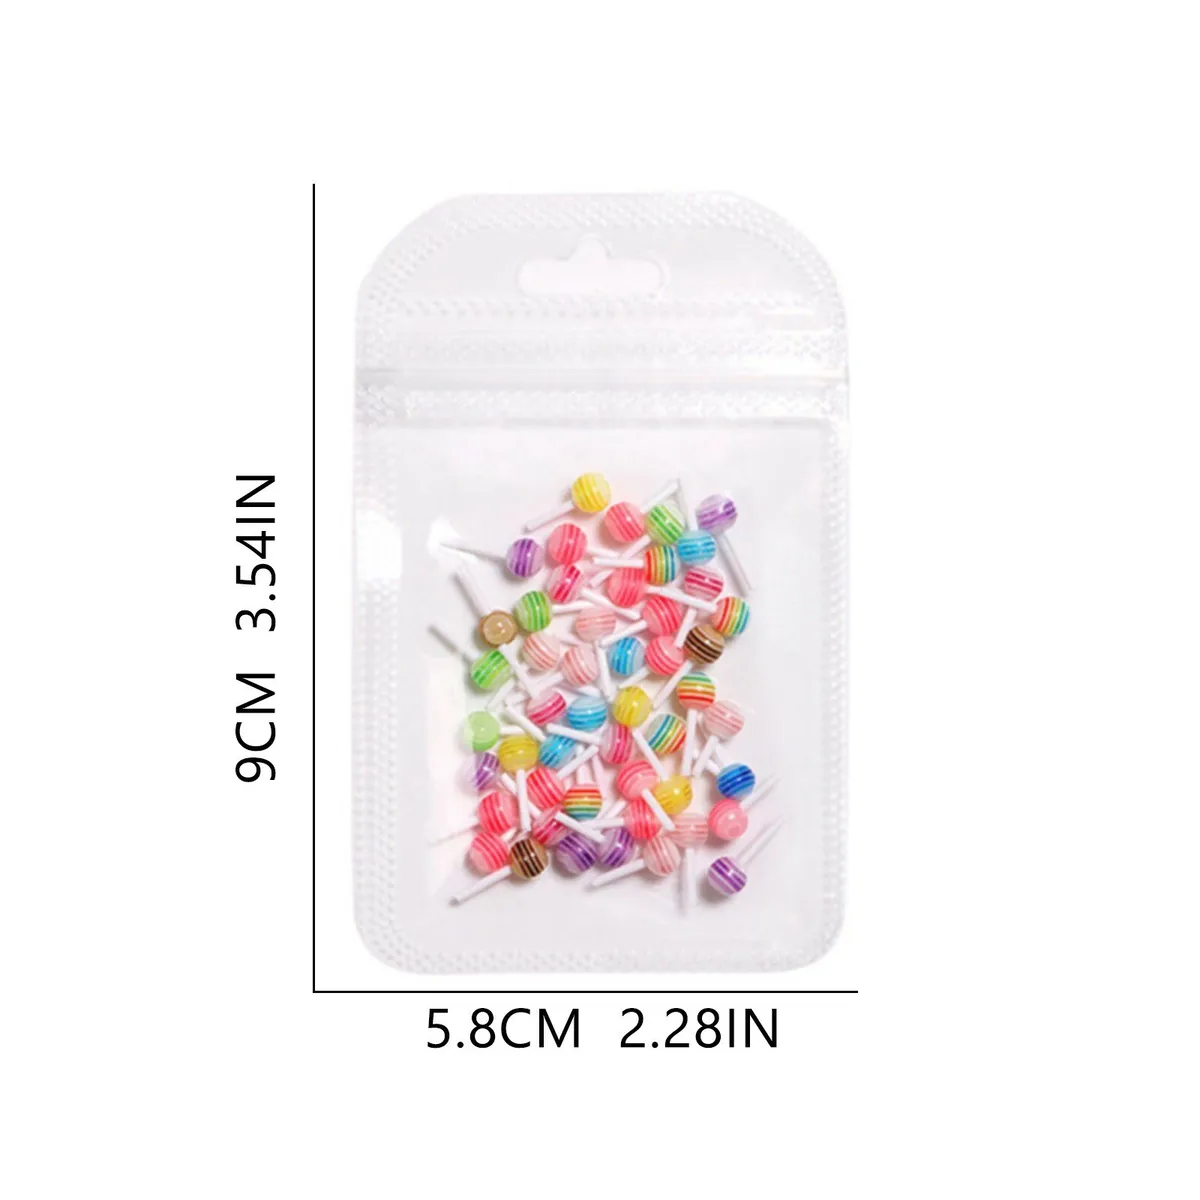 XL Sweet Summer Kawaii Nail Charms Set Lollipop/Cherry/Jelly Bear